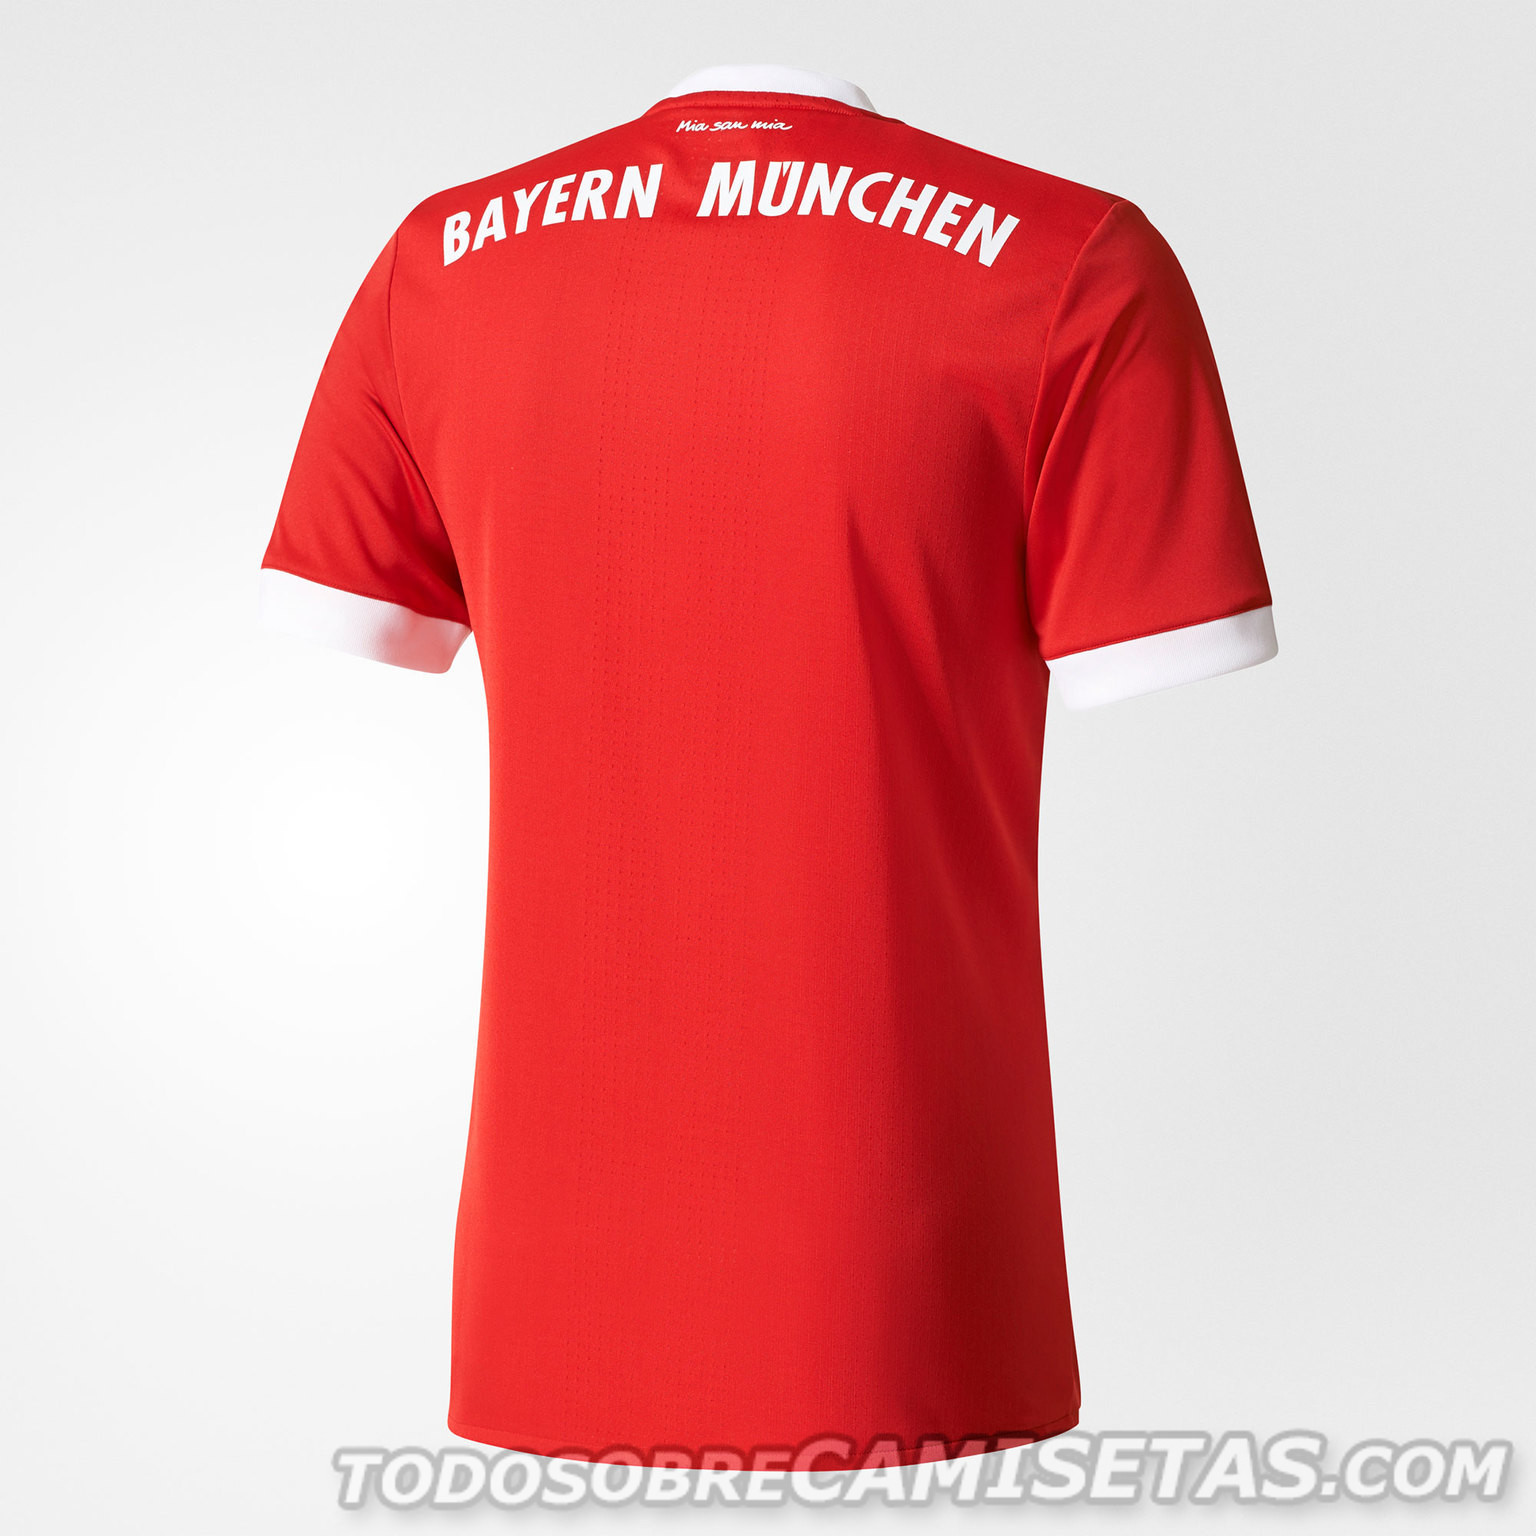 Bayern-Munich-2017-18-adidas-new-home-kit-3.jpg